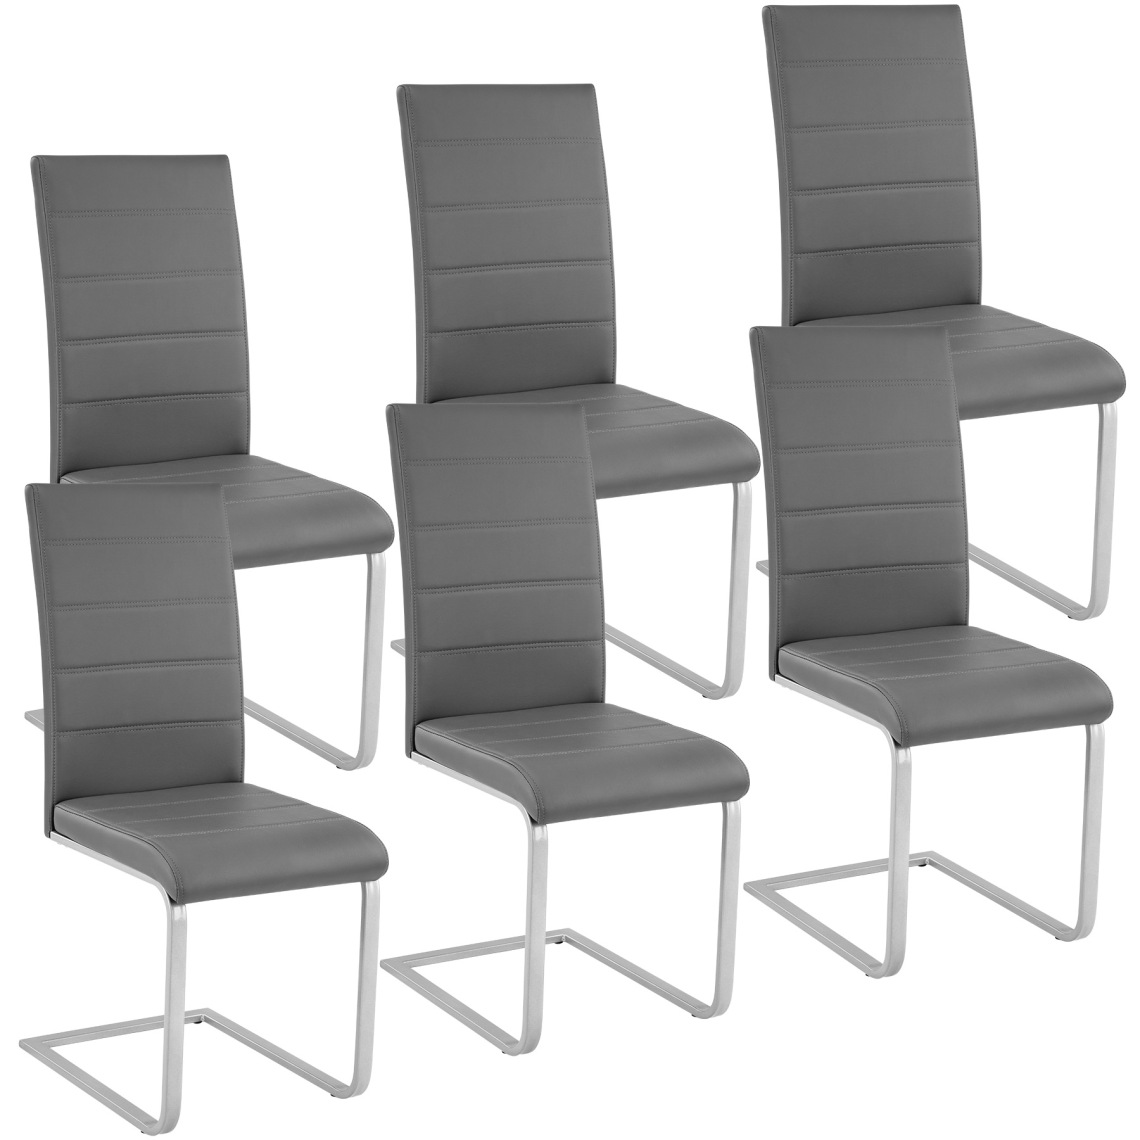 Tectake - 6 Chaises de Salle à Manger BETTINA Rembourrées Pieds en métal Argentés Design Moderne - gris - Chaises